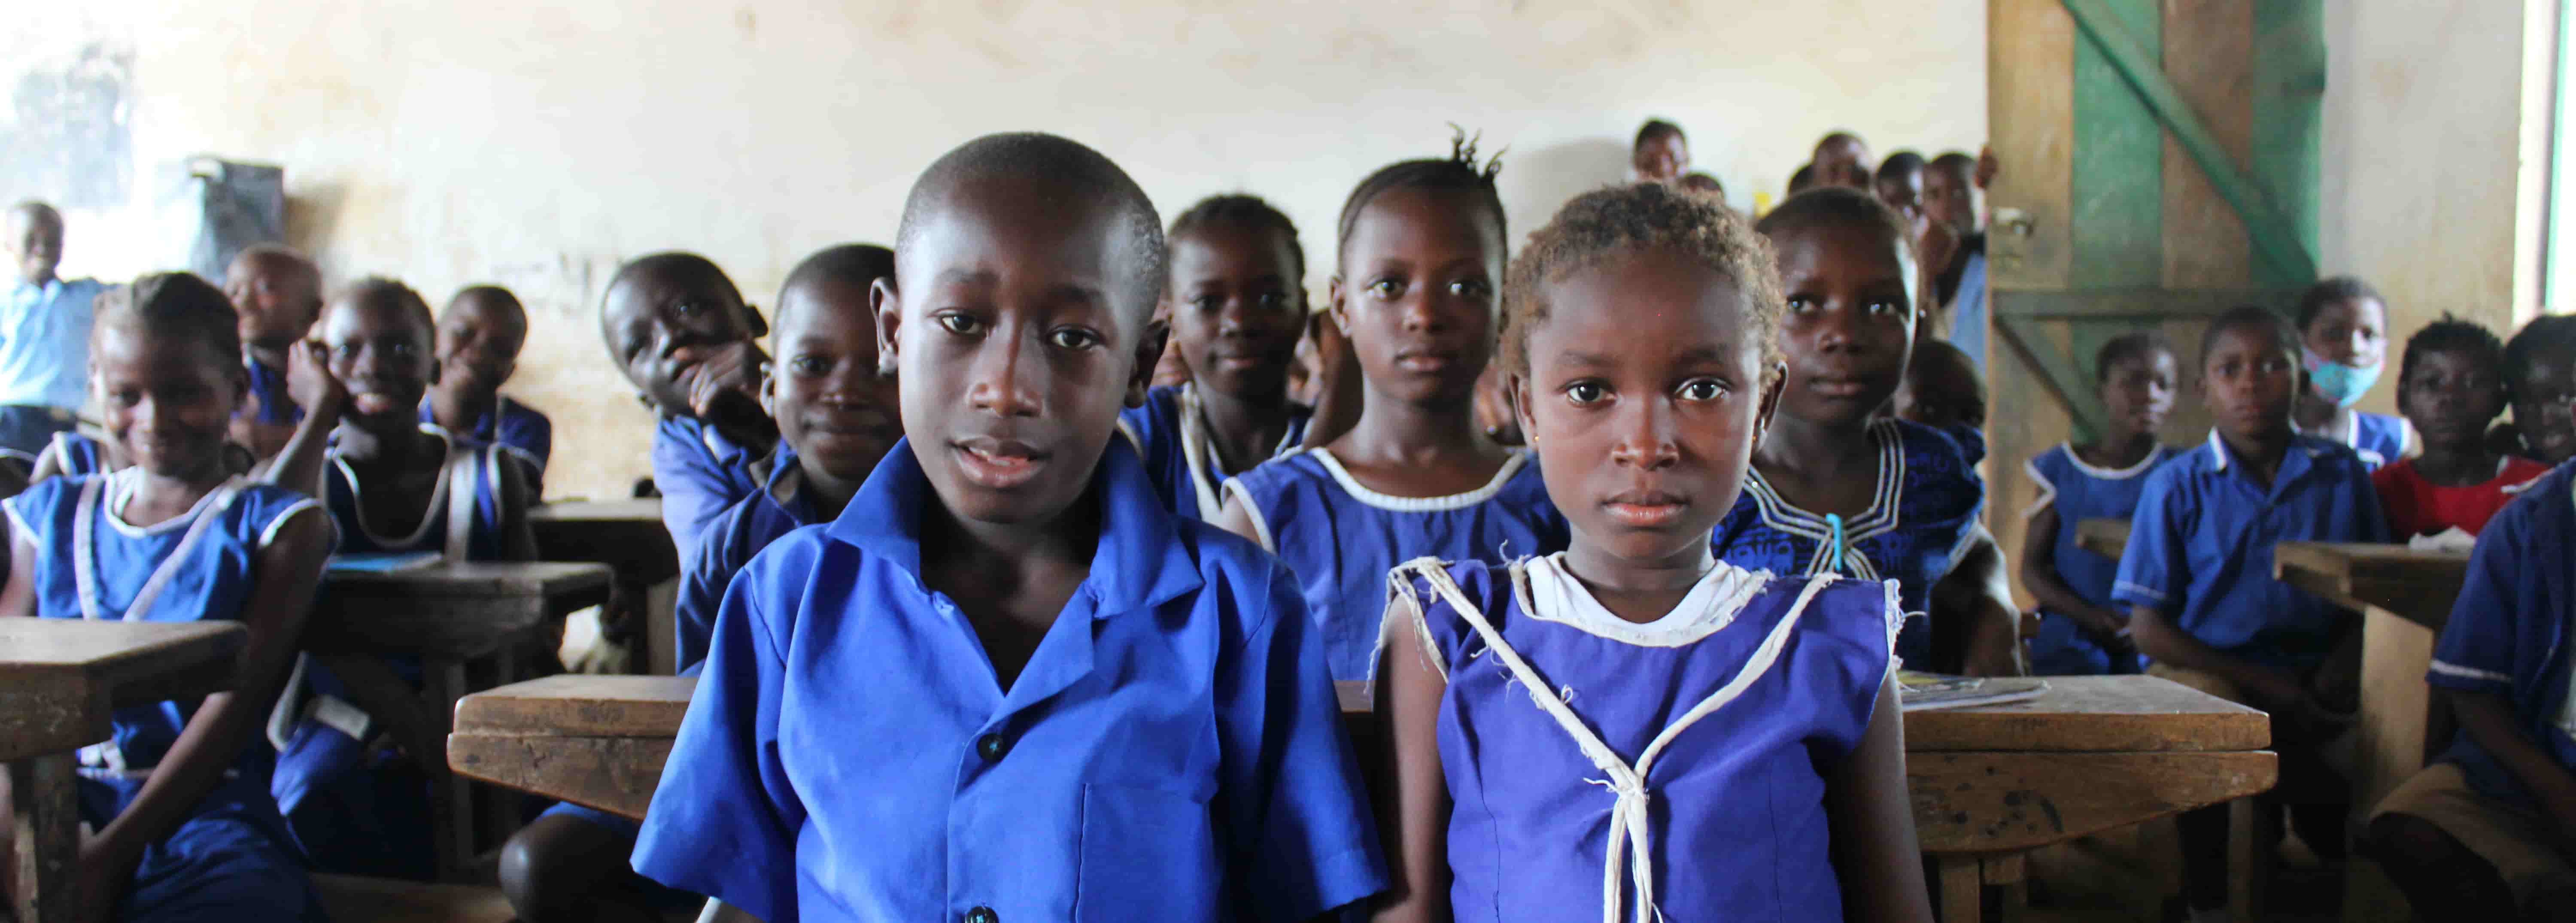 Children standing in classroom